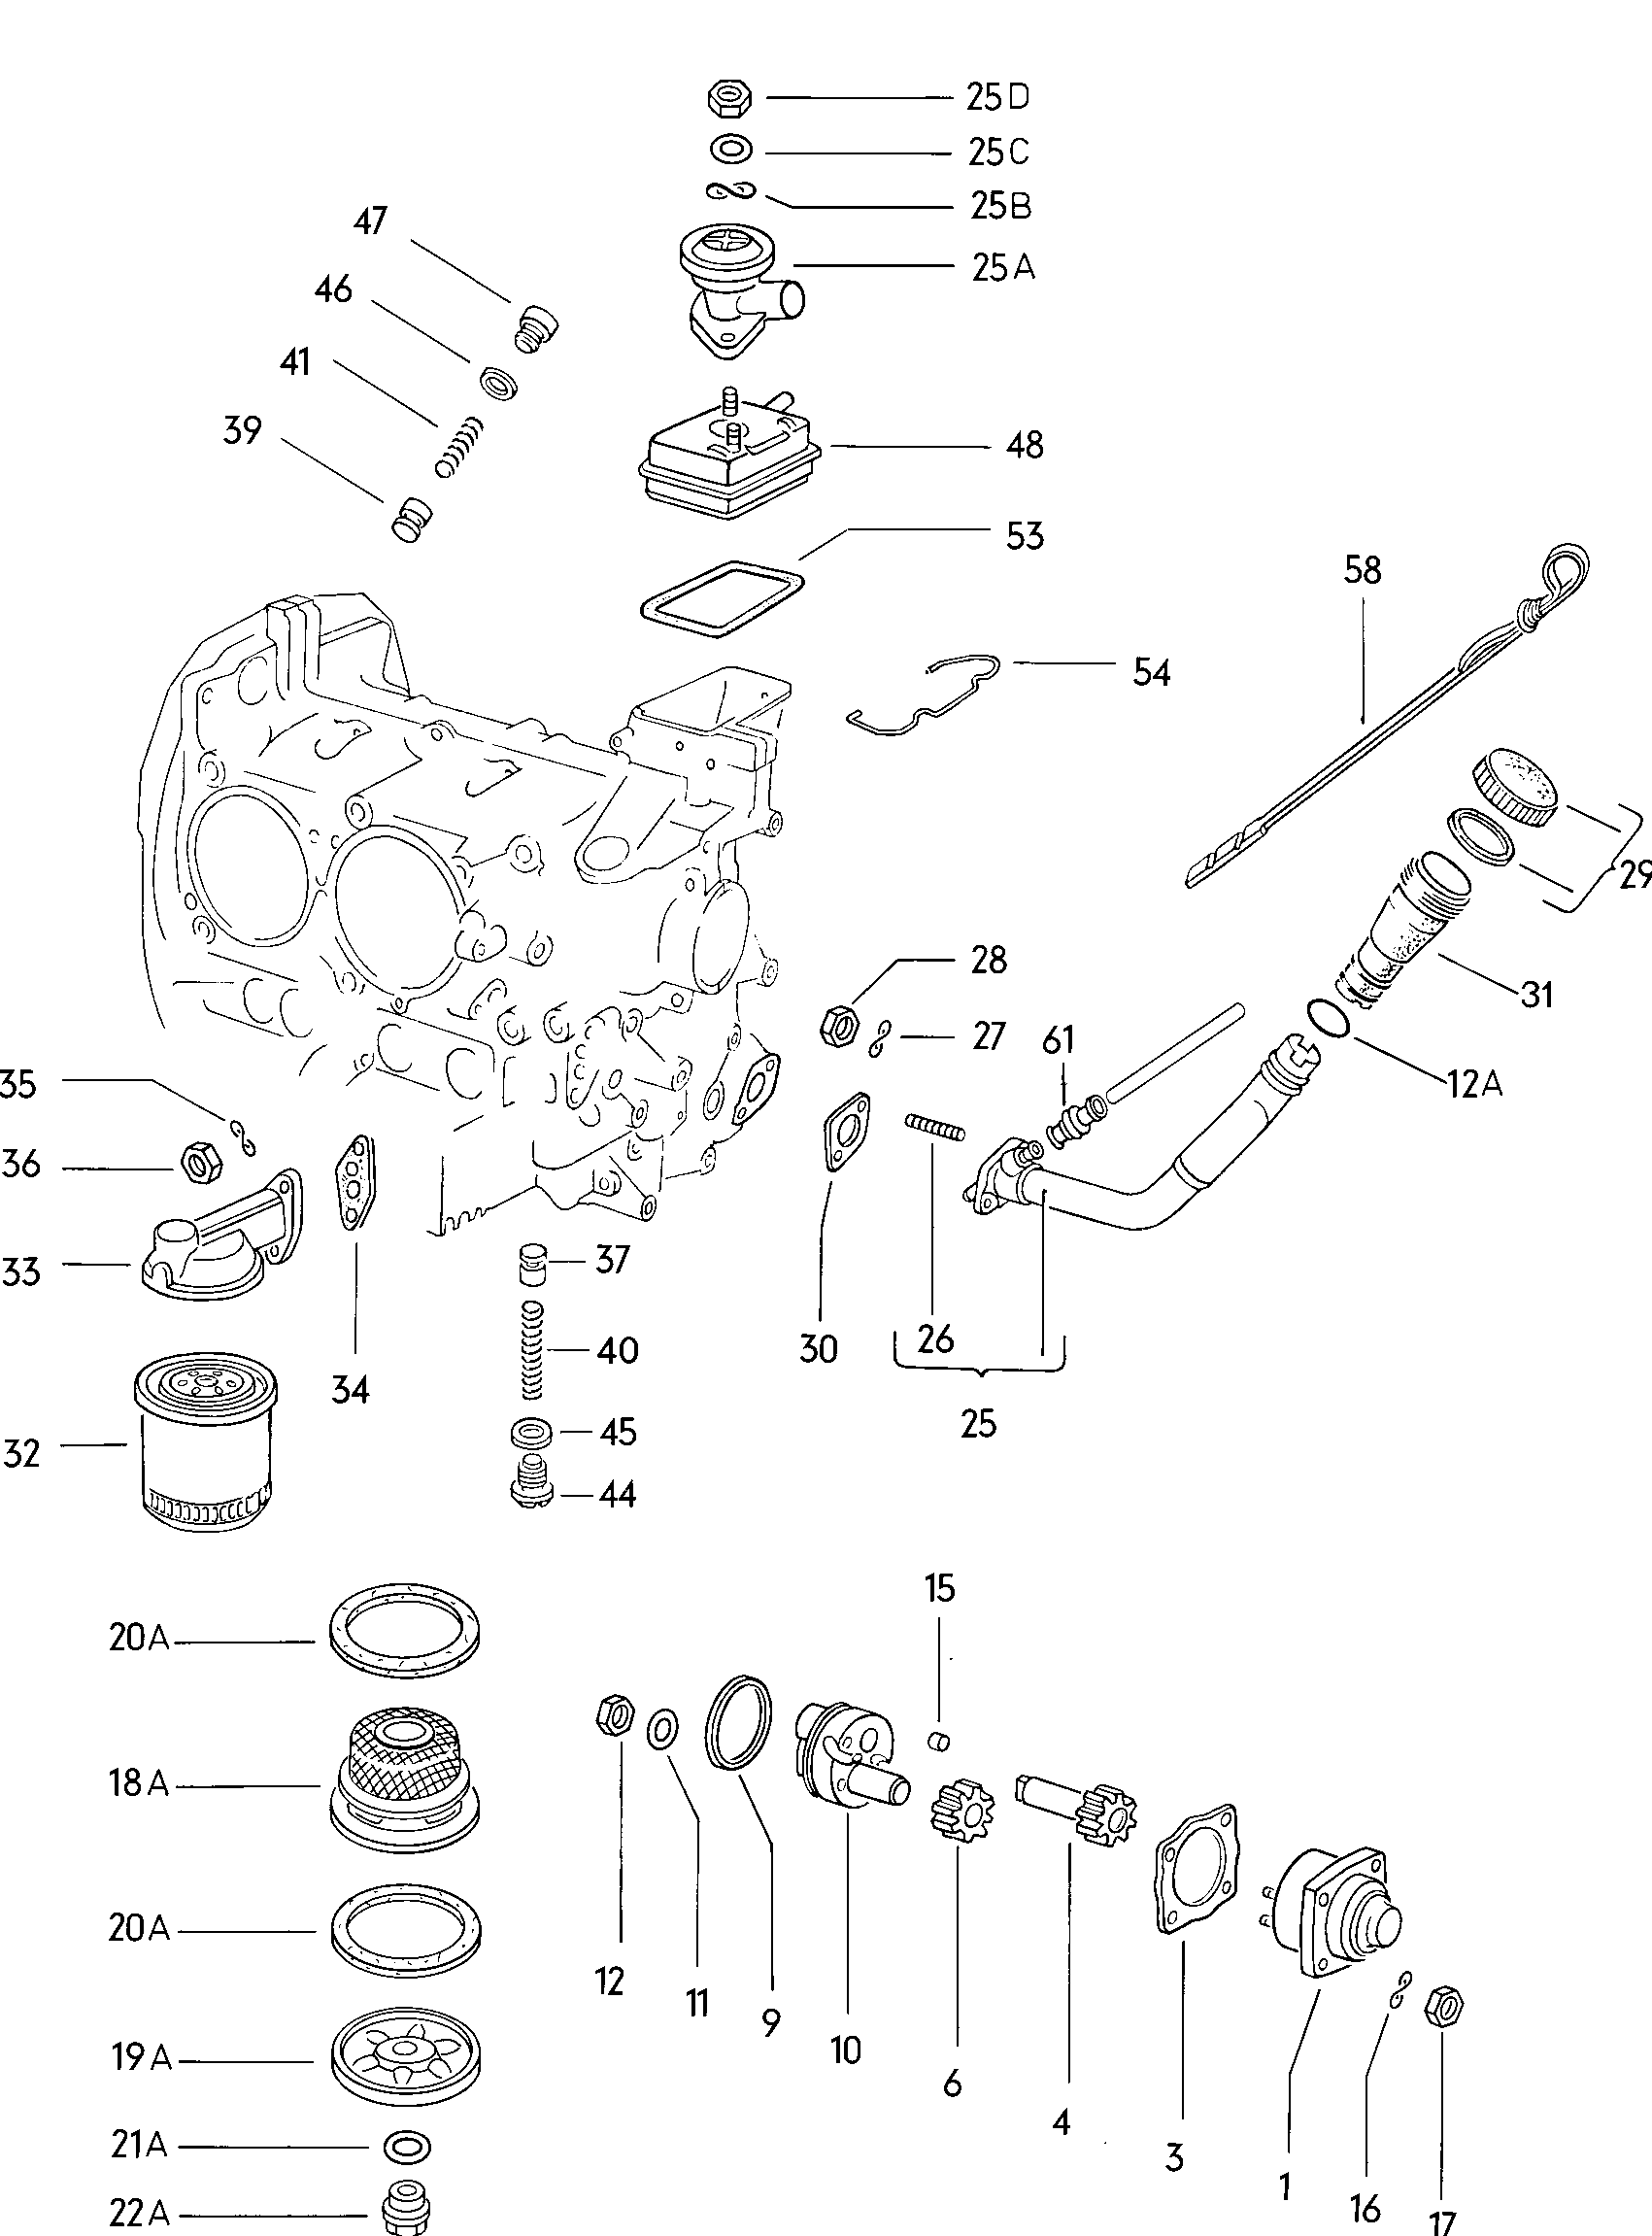 Yağ pompası; Yağ doldurma ağzı; Yağ ölç çubu - Typ 2/syncro(T2)  